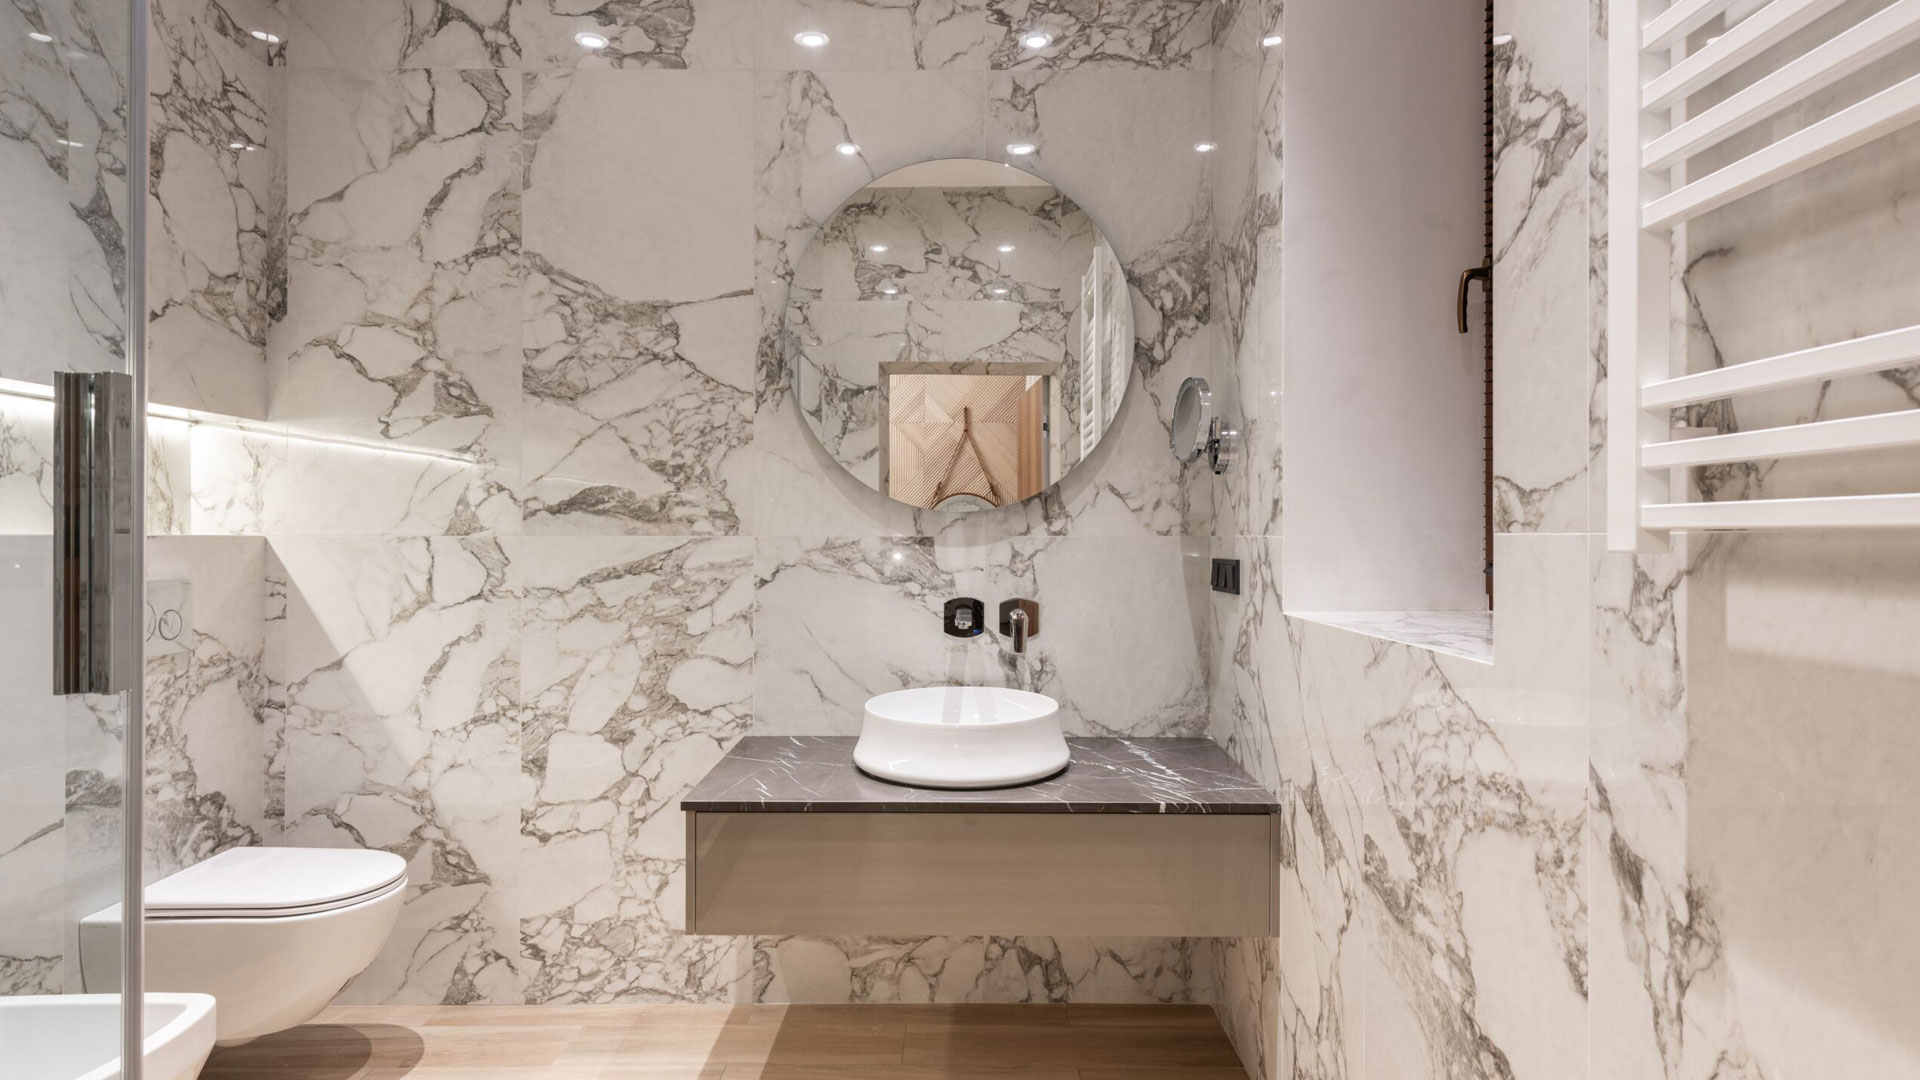 Dark Ceramic Tiles vs Light Ceramic Tiles? Which is Better Bathroom Tiles?